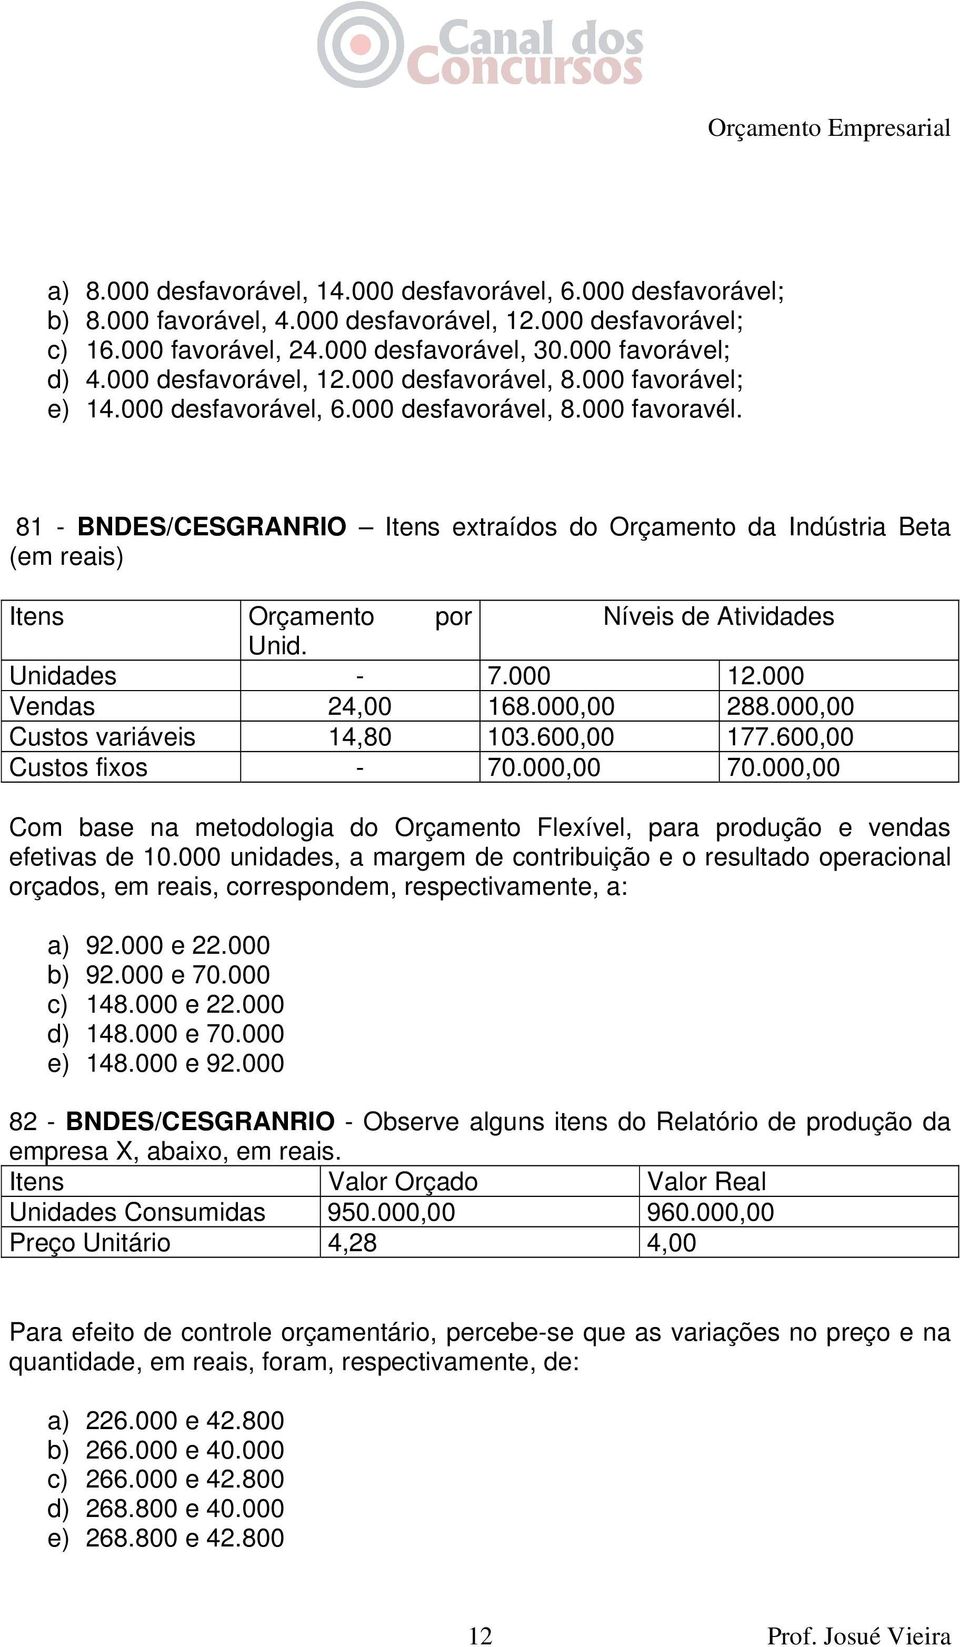 81 - BNDES/CESGRANRIO Itens extraídos do Orçamento da Indústria Beta (em reais) Itens Orçamento por Níveis de Atividades Unid. Unidades - 7.000 12.000 Vendas 24,00 168.000,00 288.